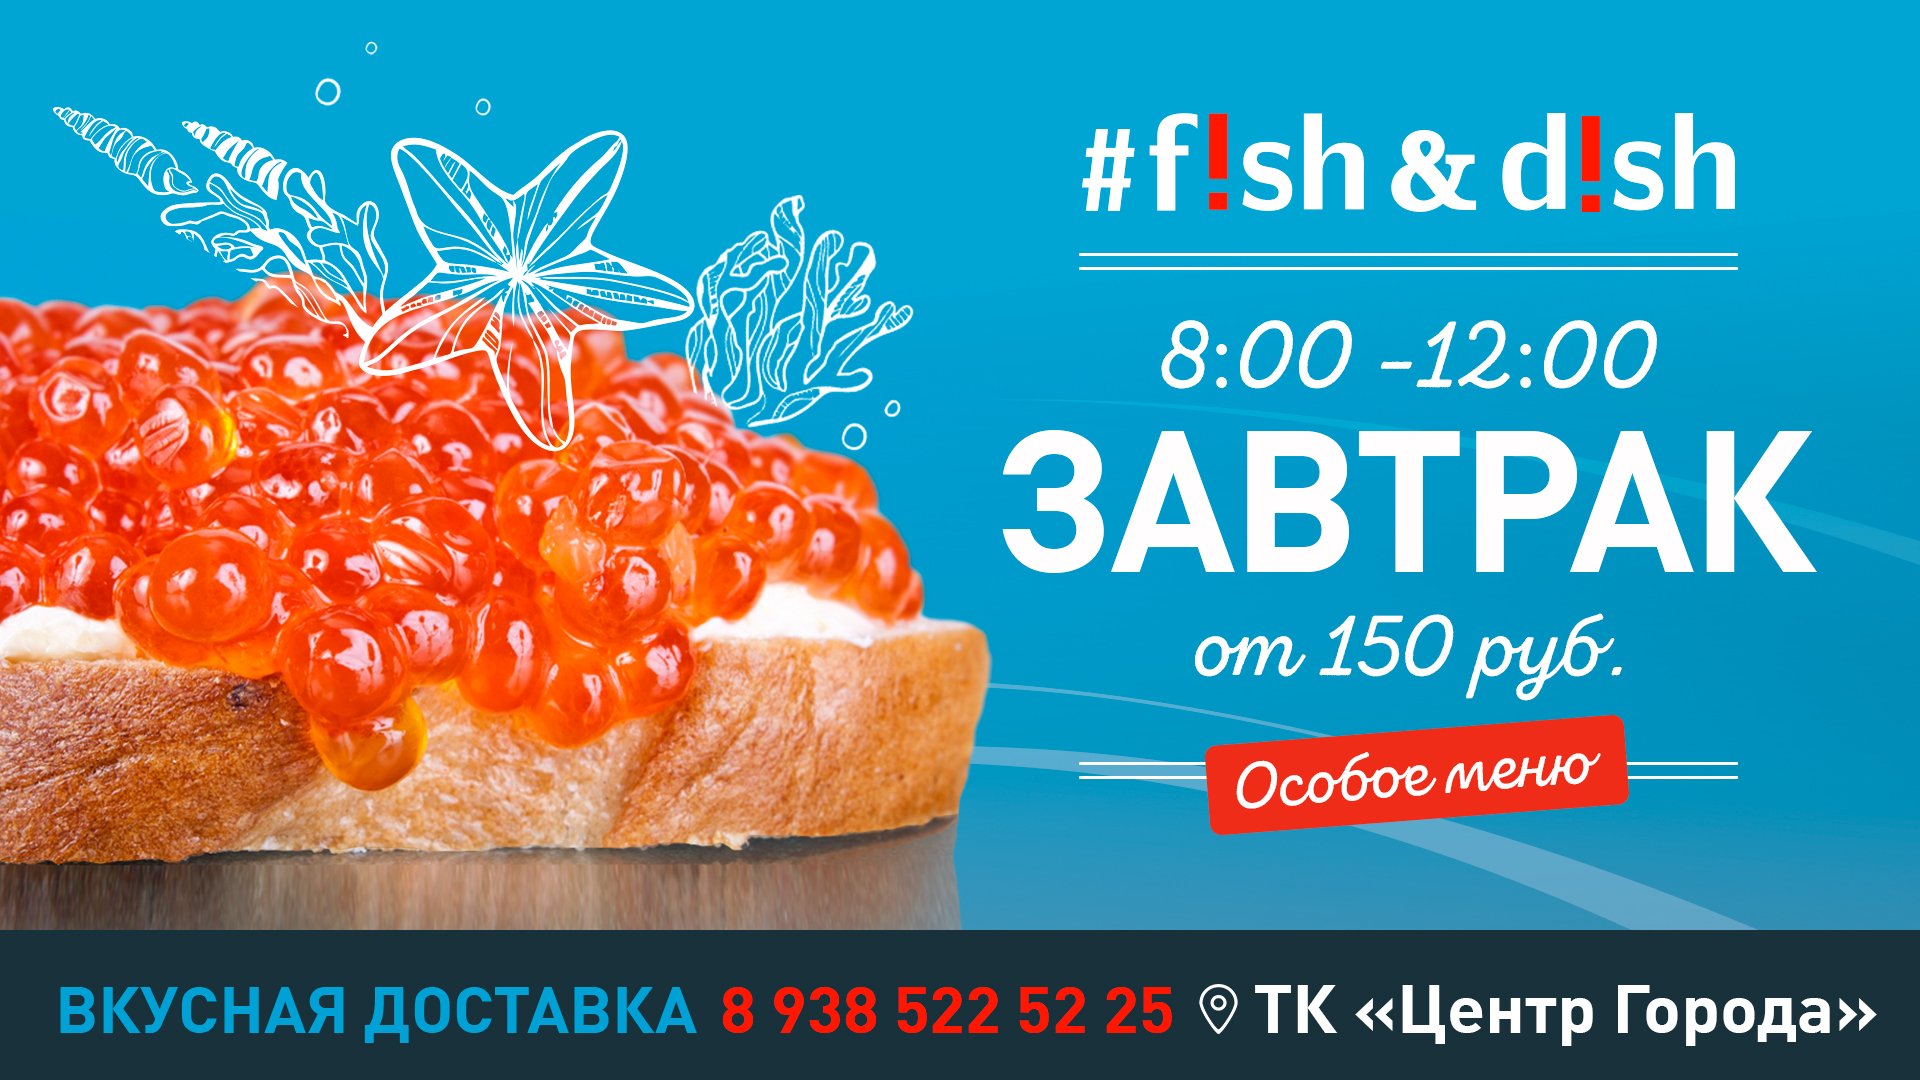 Завтраки в ресторане #Fish&Dish от 150 руб.!